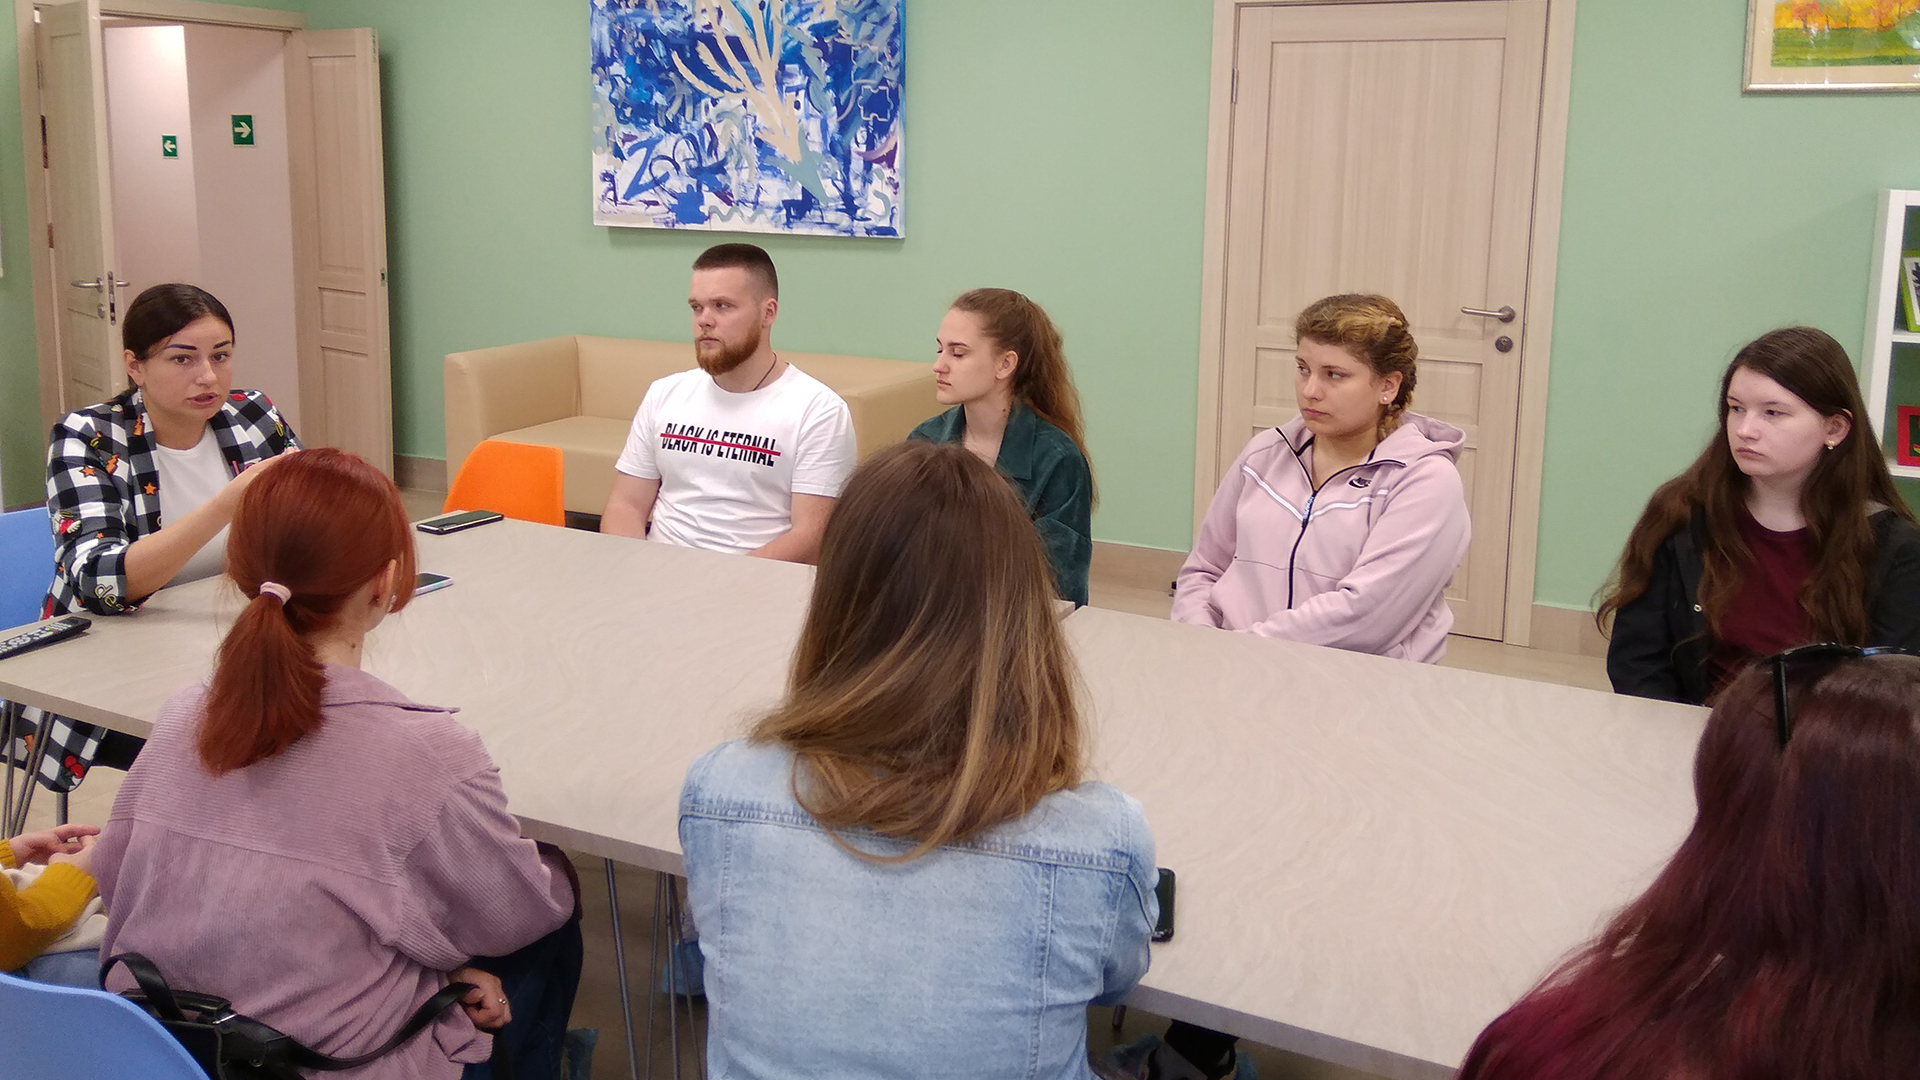 25 – 28 мая прошла серия встреч и мастер-классов для студентов-дефектологов в Ресурсном центре социальной поддержки людей с расстройствами аутистического спектра